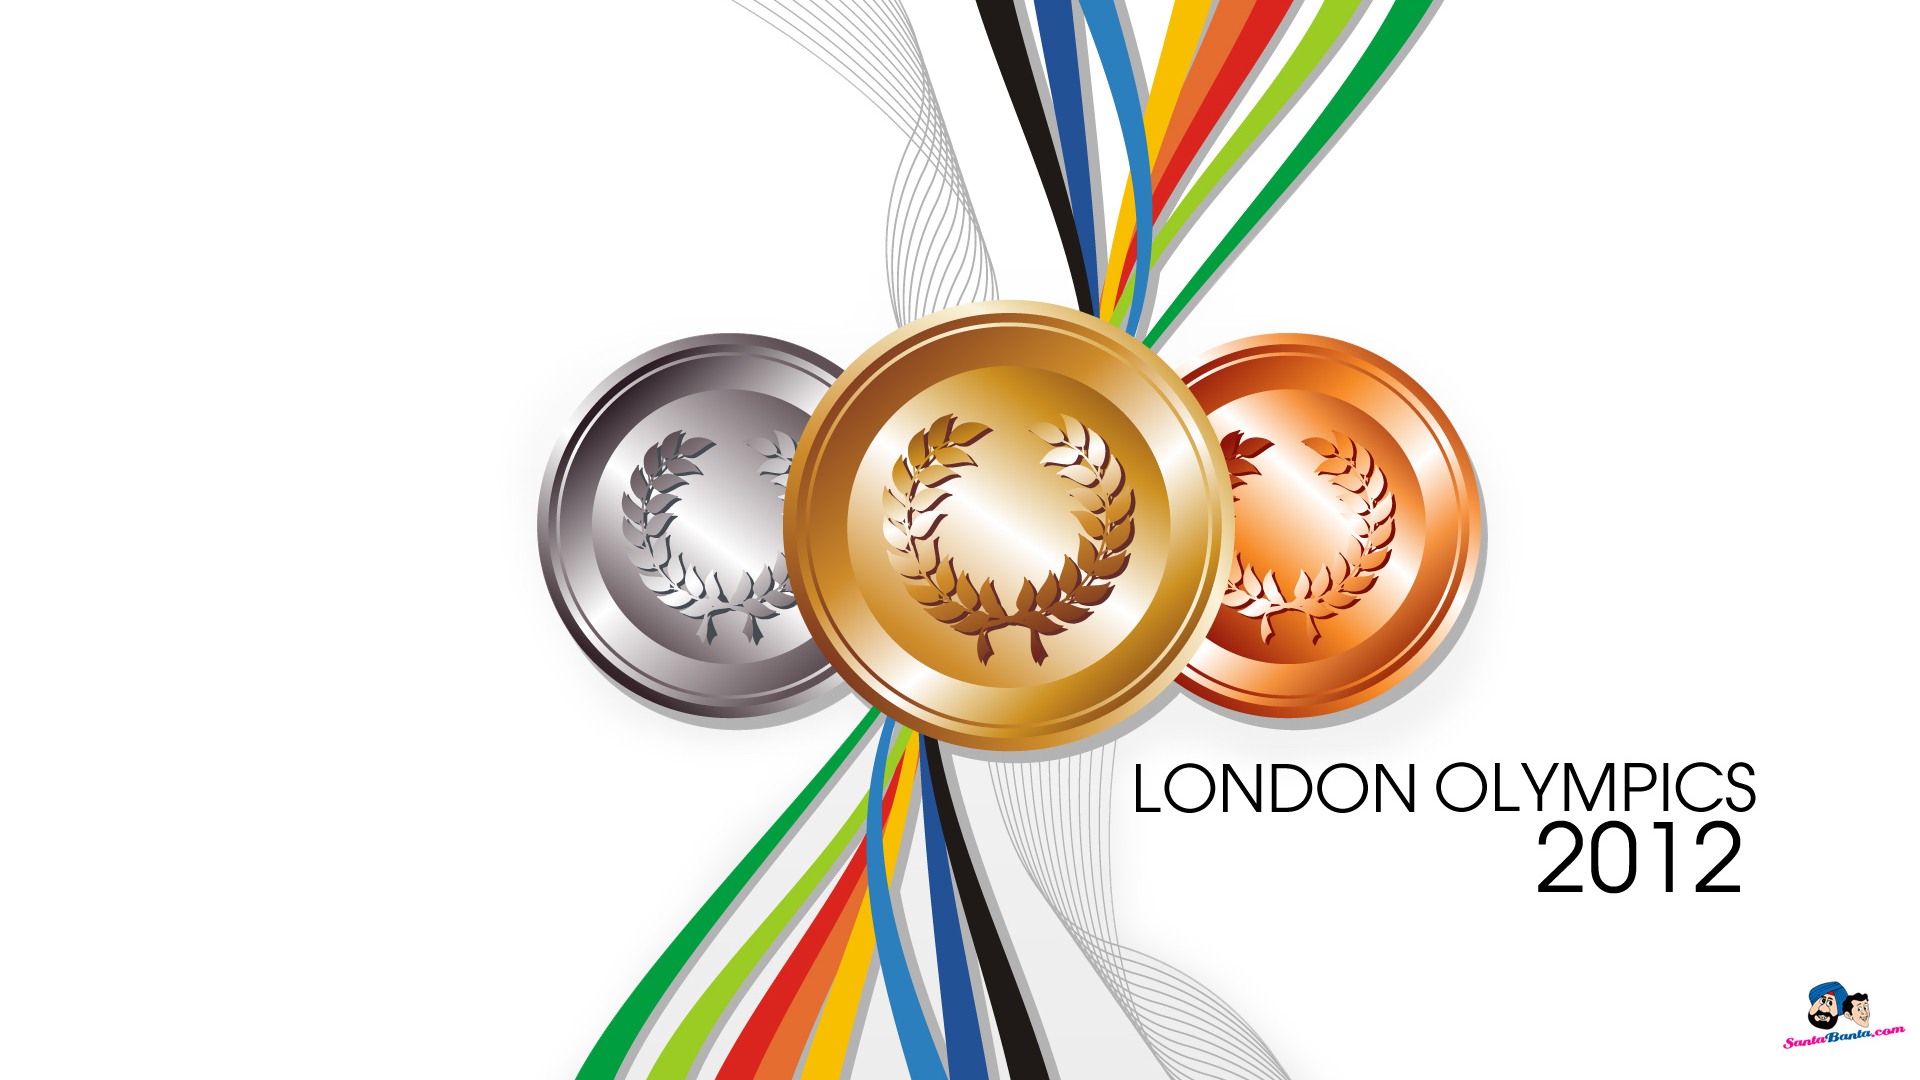 Londres 2012 Olimpiadas fondos temáticos (2) #12 - 1920x1080